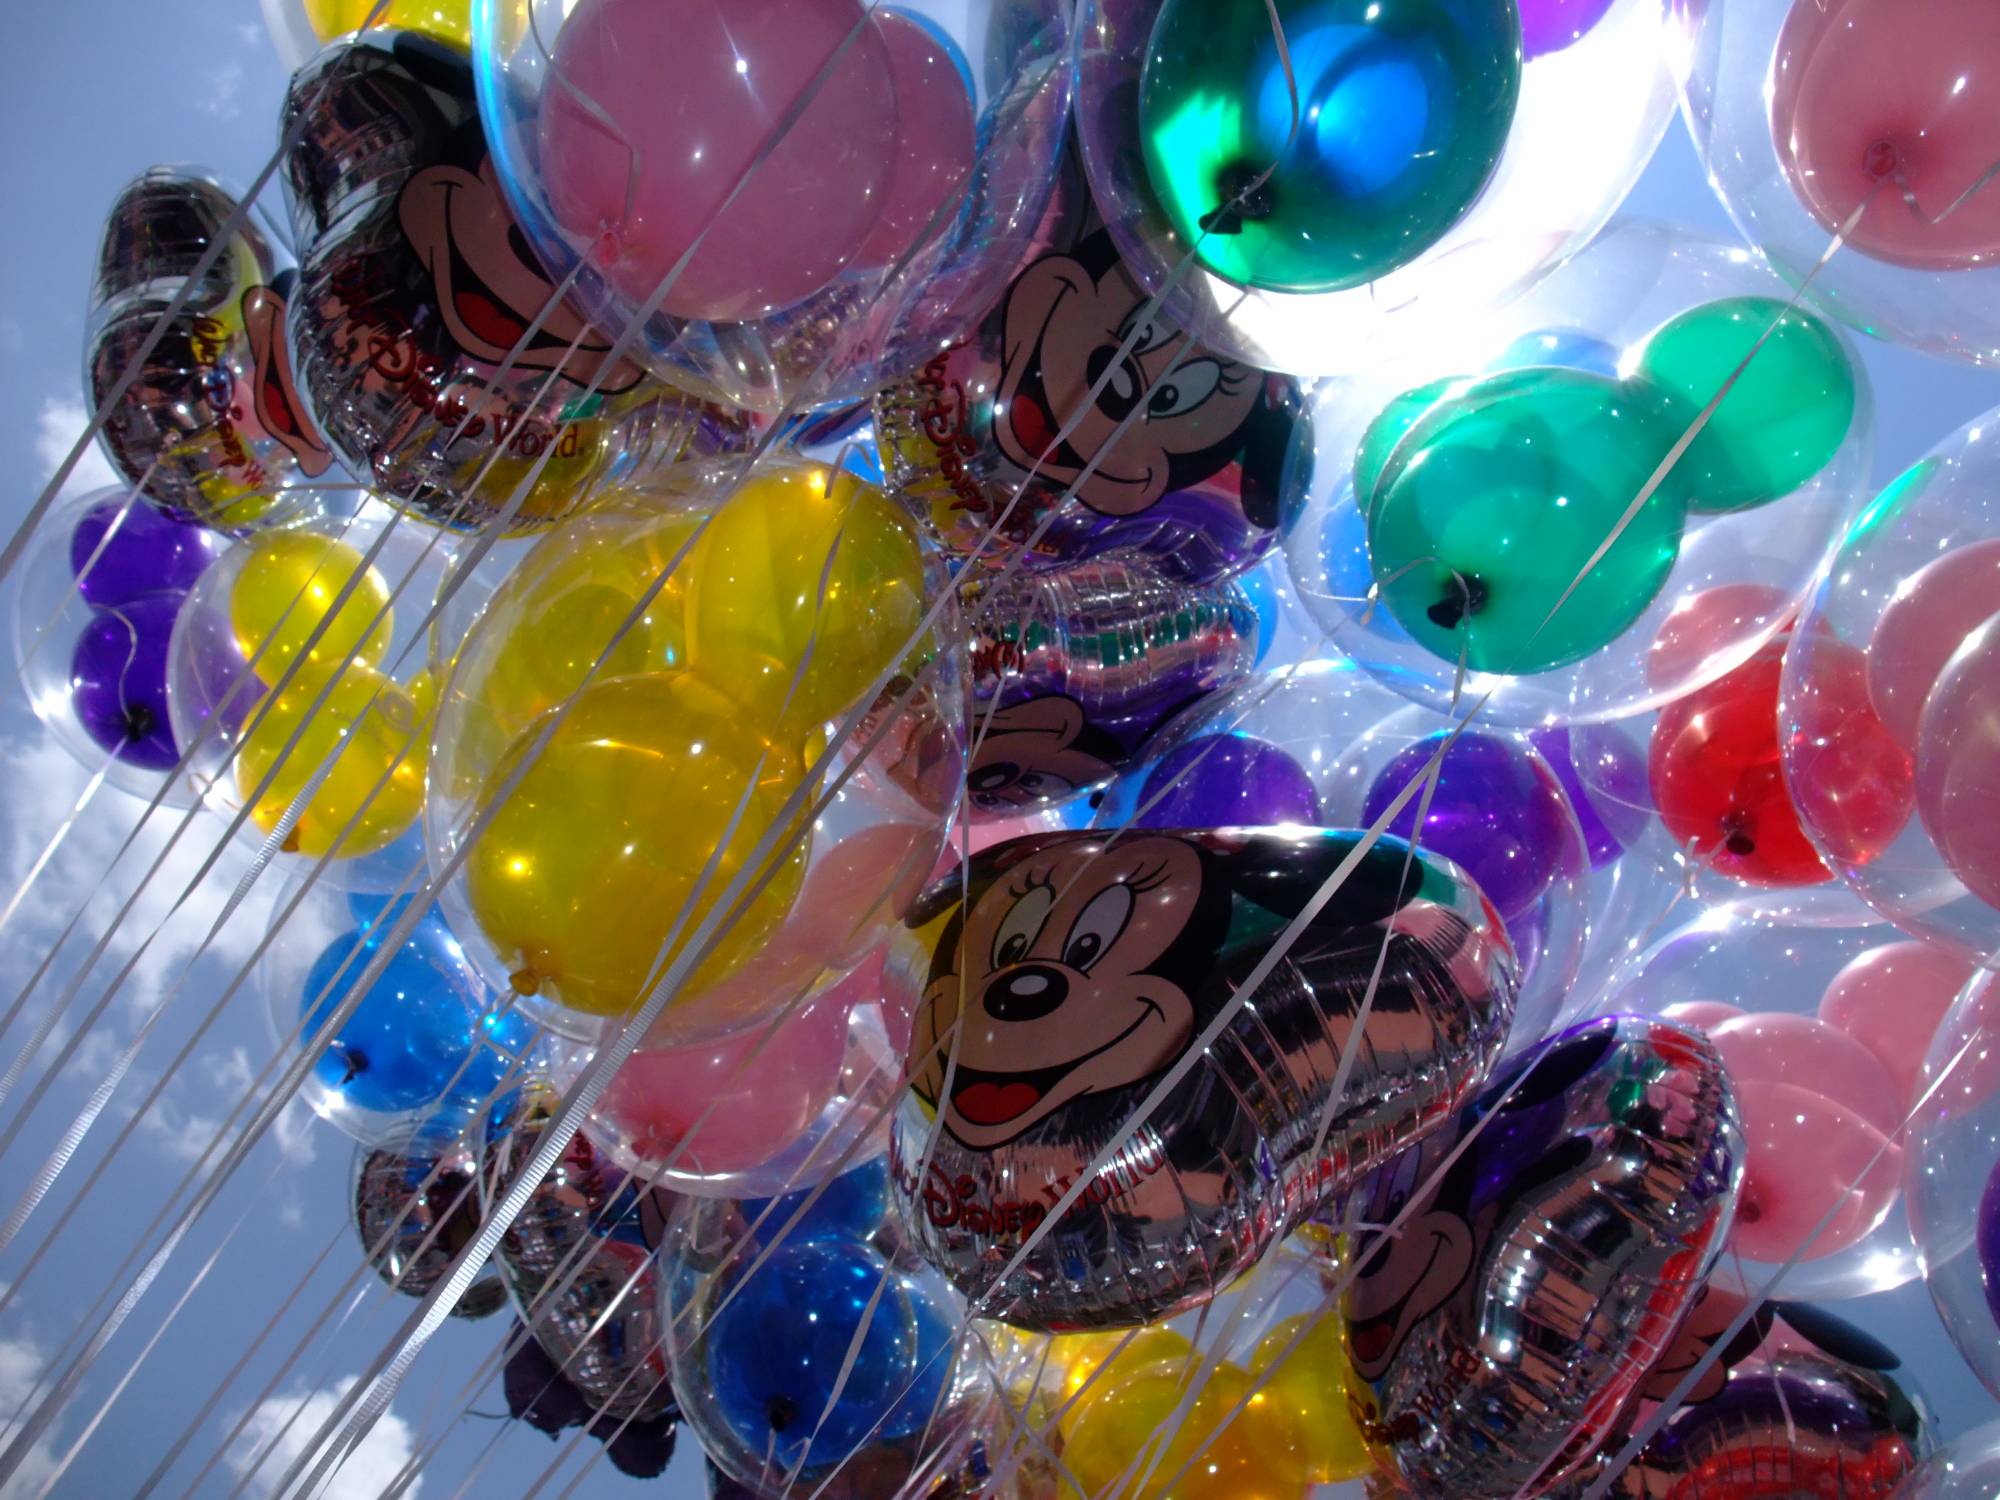 Mickey Balloons on Main Street USA